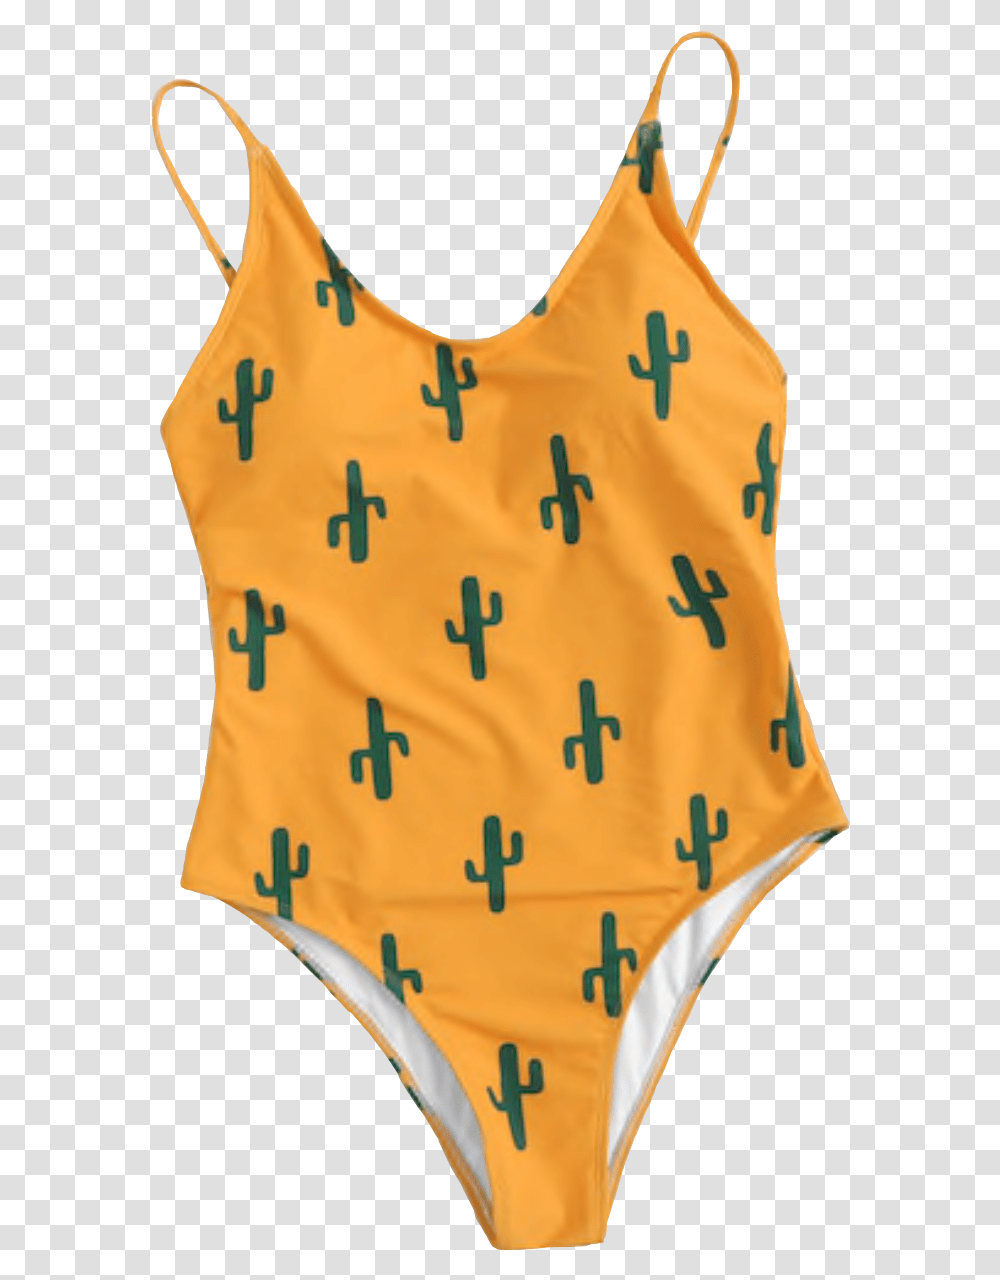 Swim Cactus Swimsuit, Bib, Lifejacket, Vest, Clothing Transparent Png